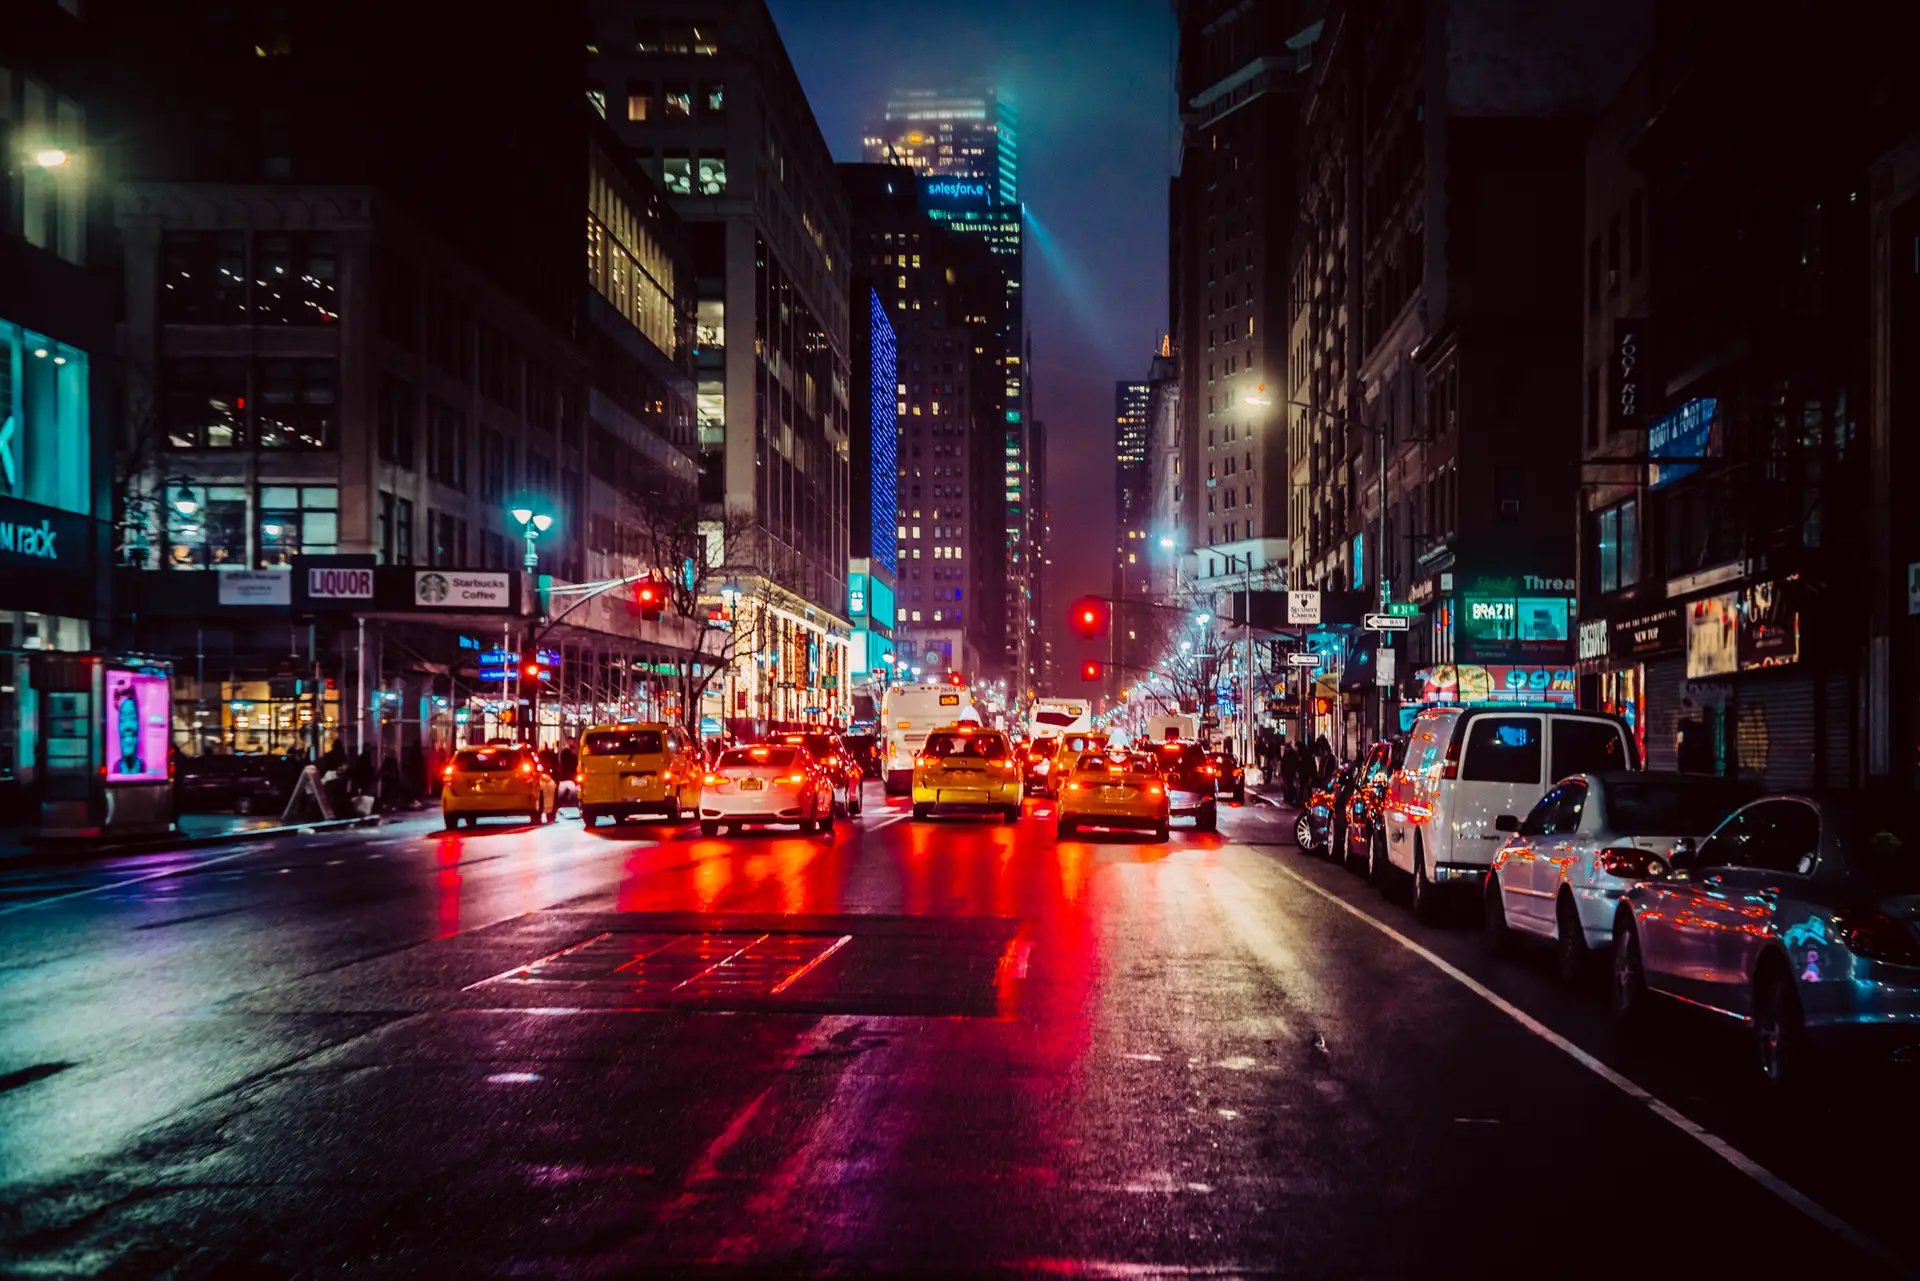 Nova Iorque permitirá apenas venda de veículos zero emissões a partir de 2035